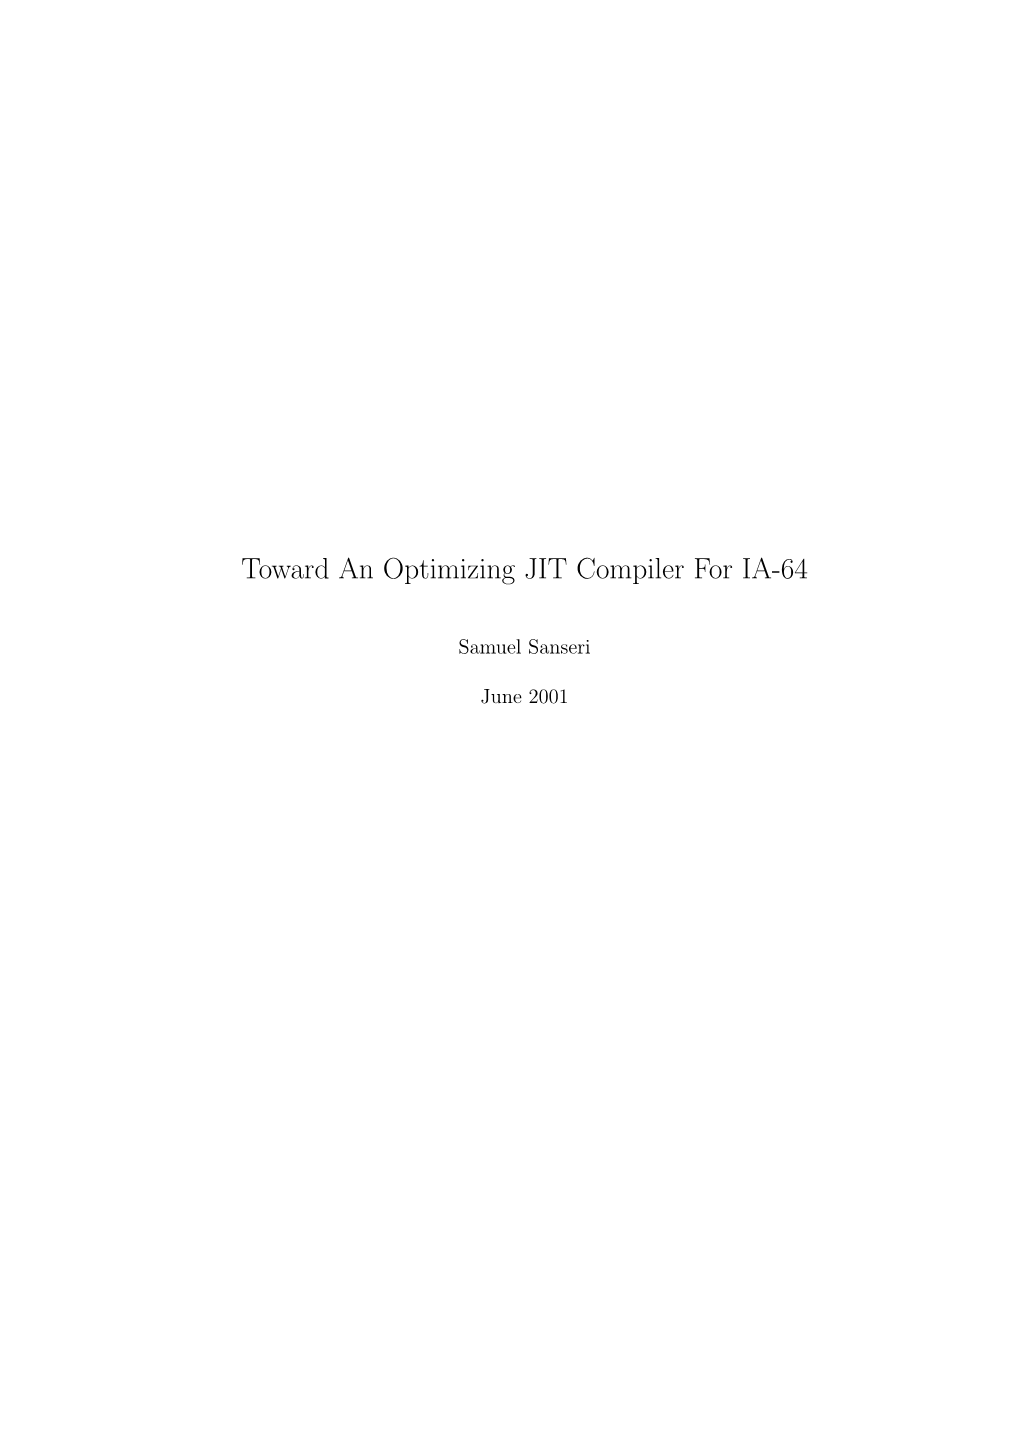 Toward an Optimizing JIT Compiler for IA-64